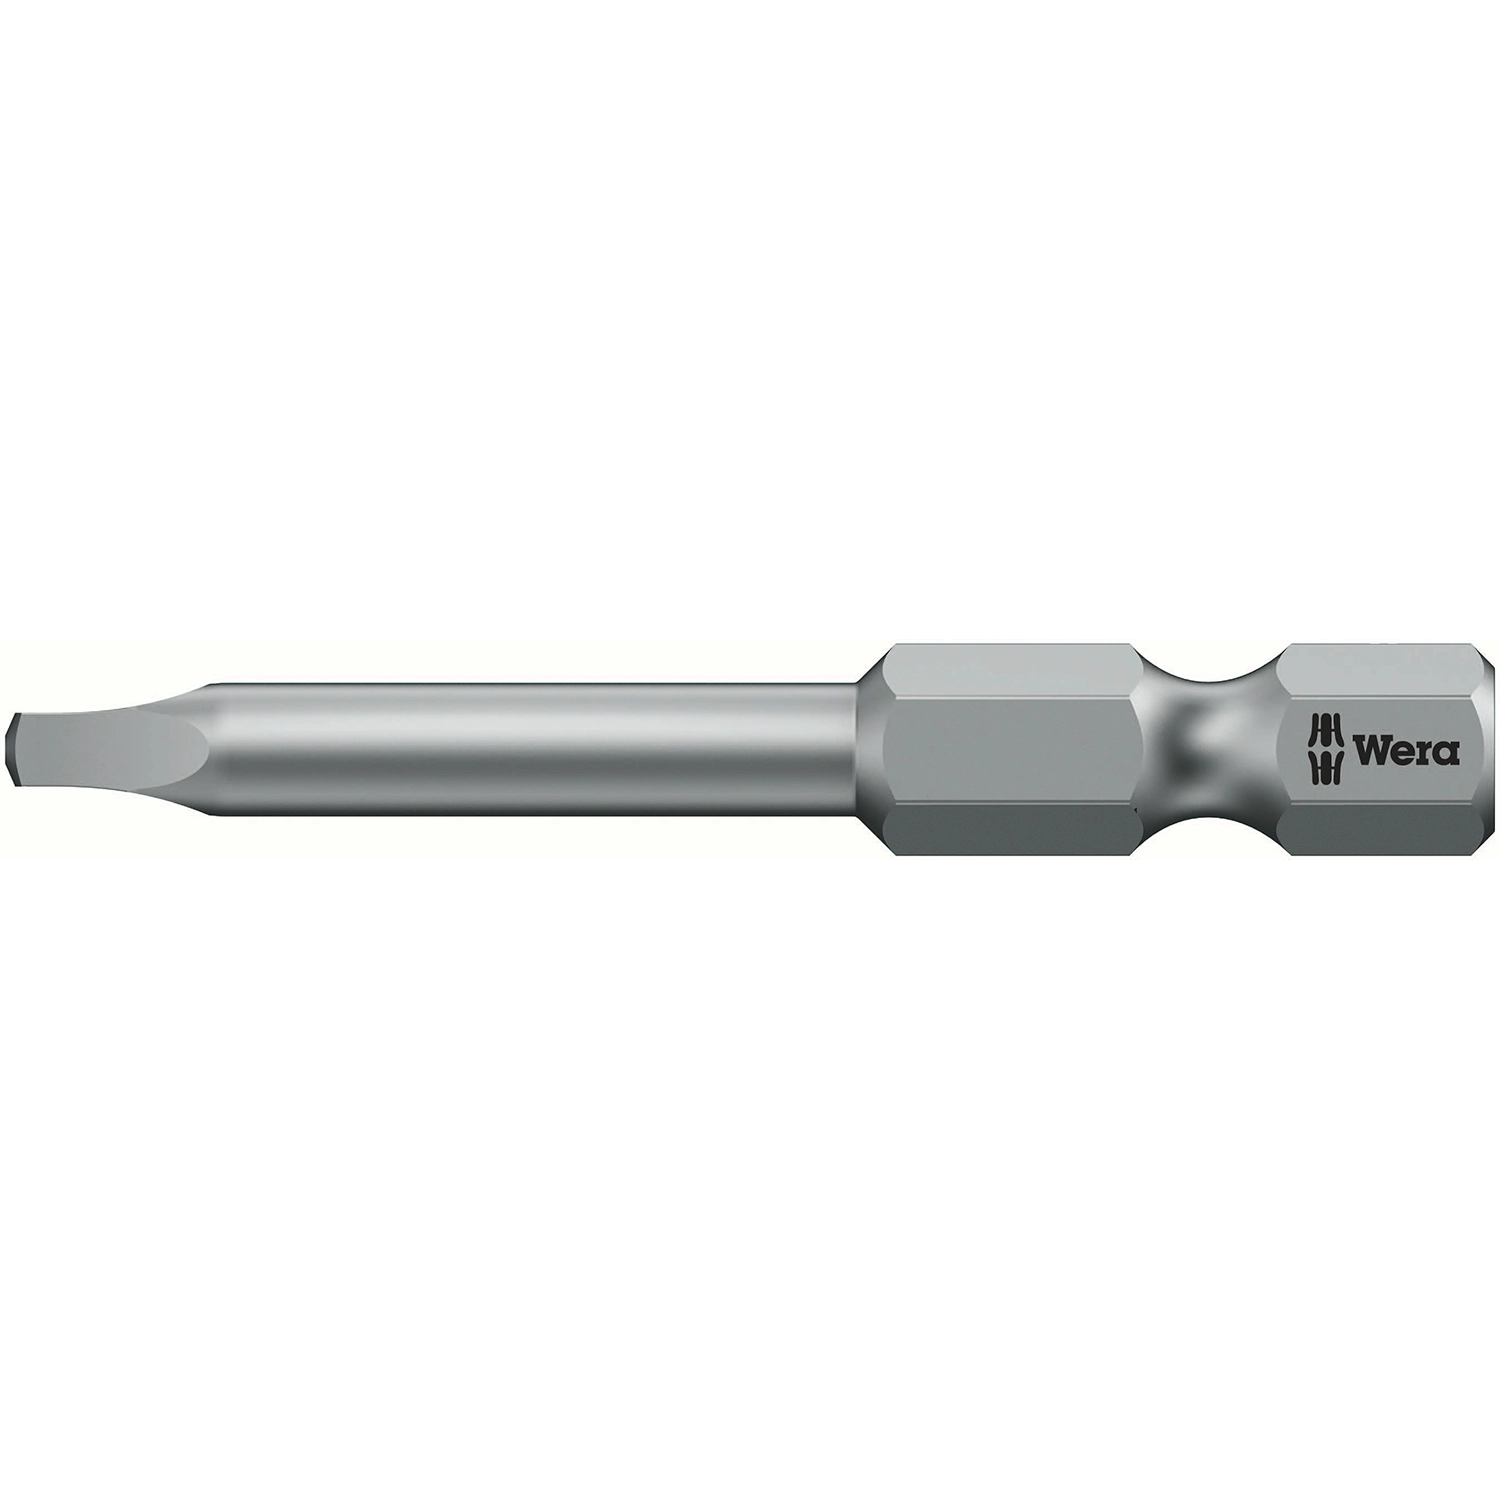 Stift Vierkant Rob 3x50mm 868/Zz 60170